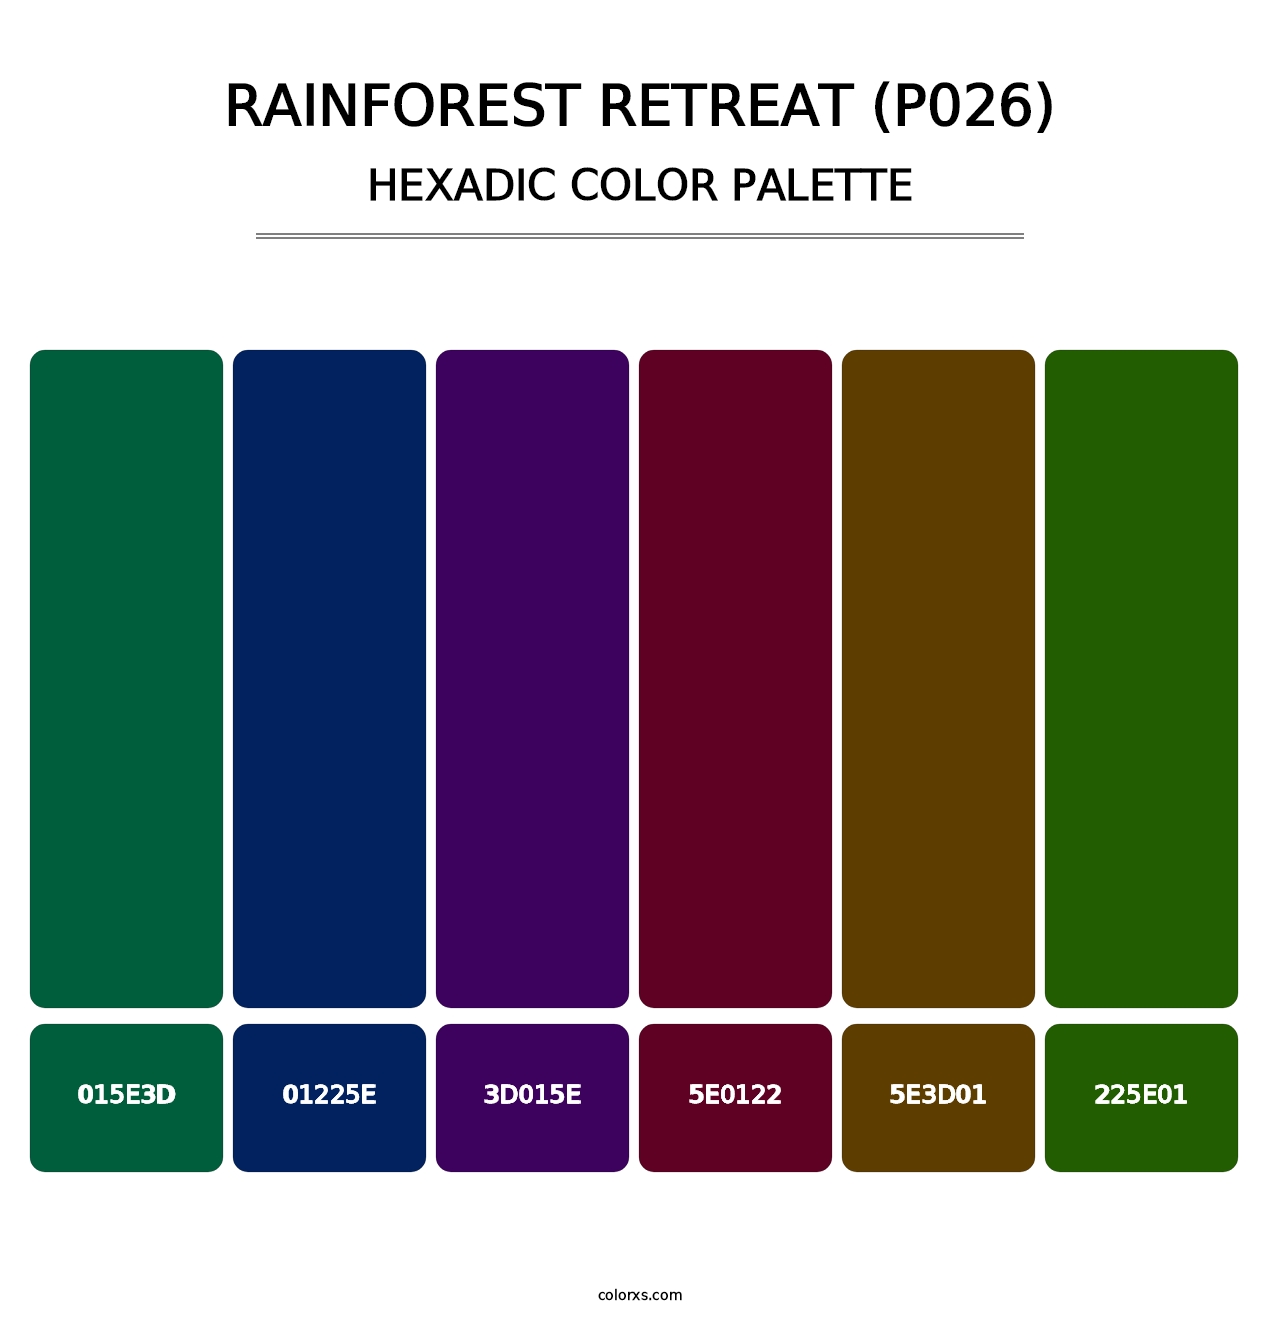 Rainforest Retreat (P026) - Hexadic Color Palette